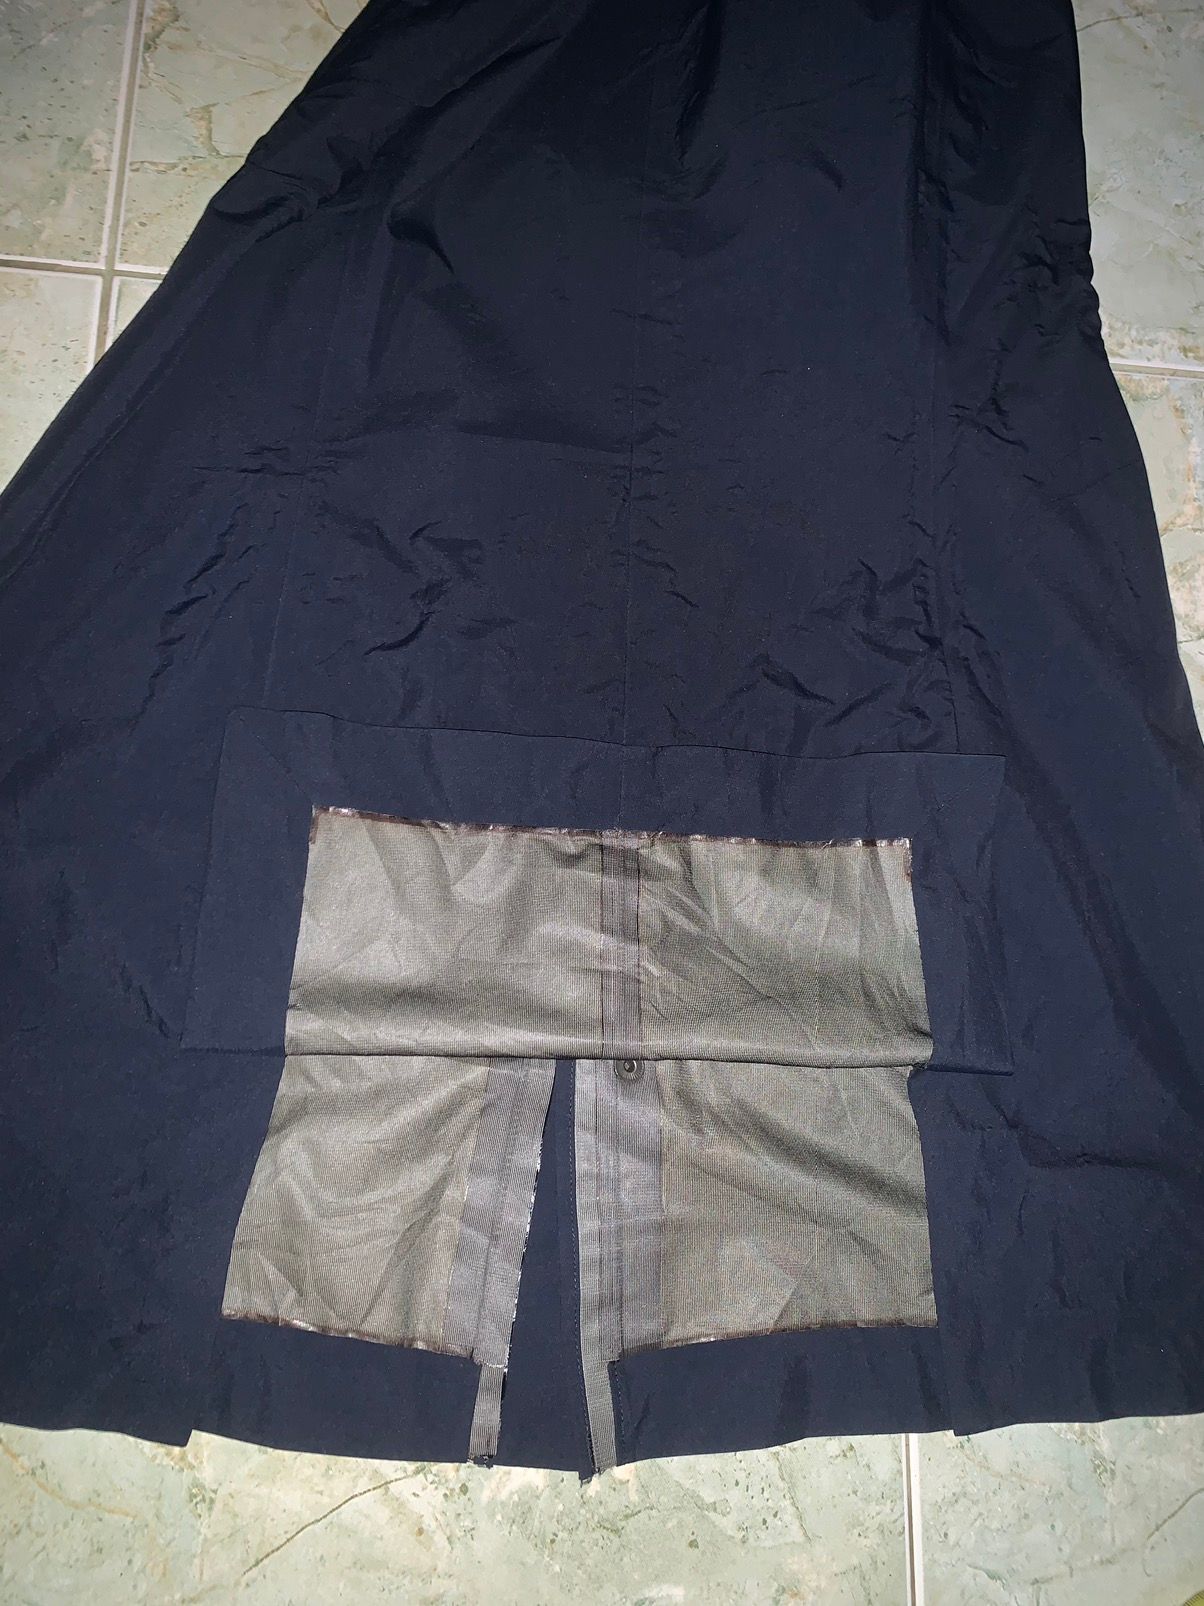 ARC’TERYX SABRE AR waterproof jacket - 18